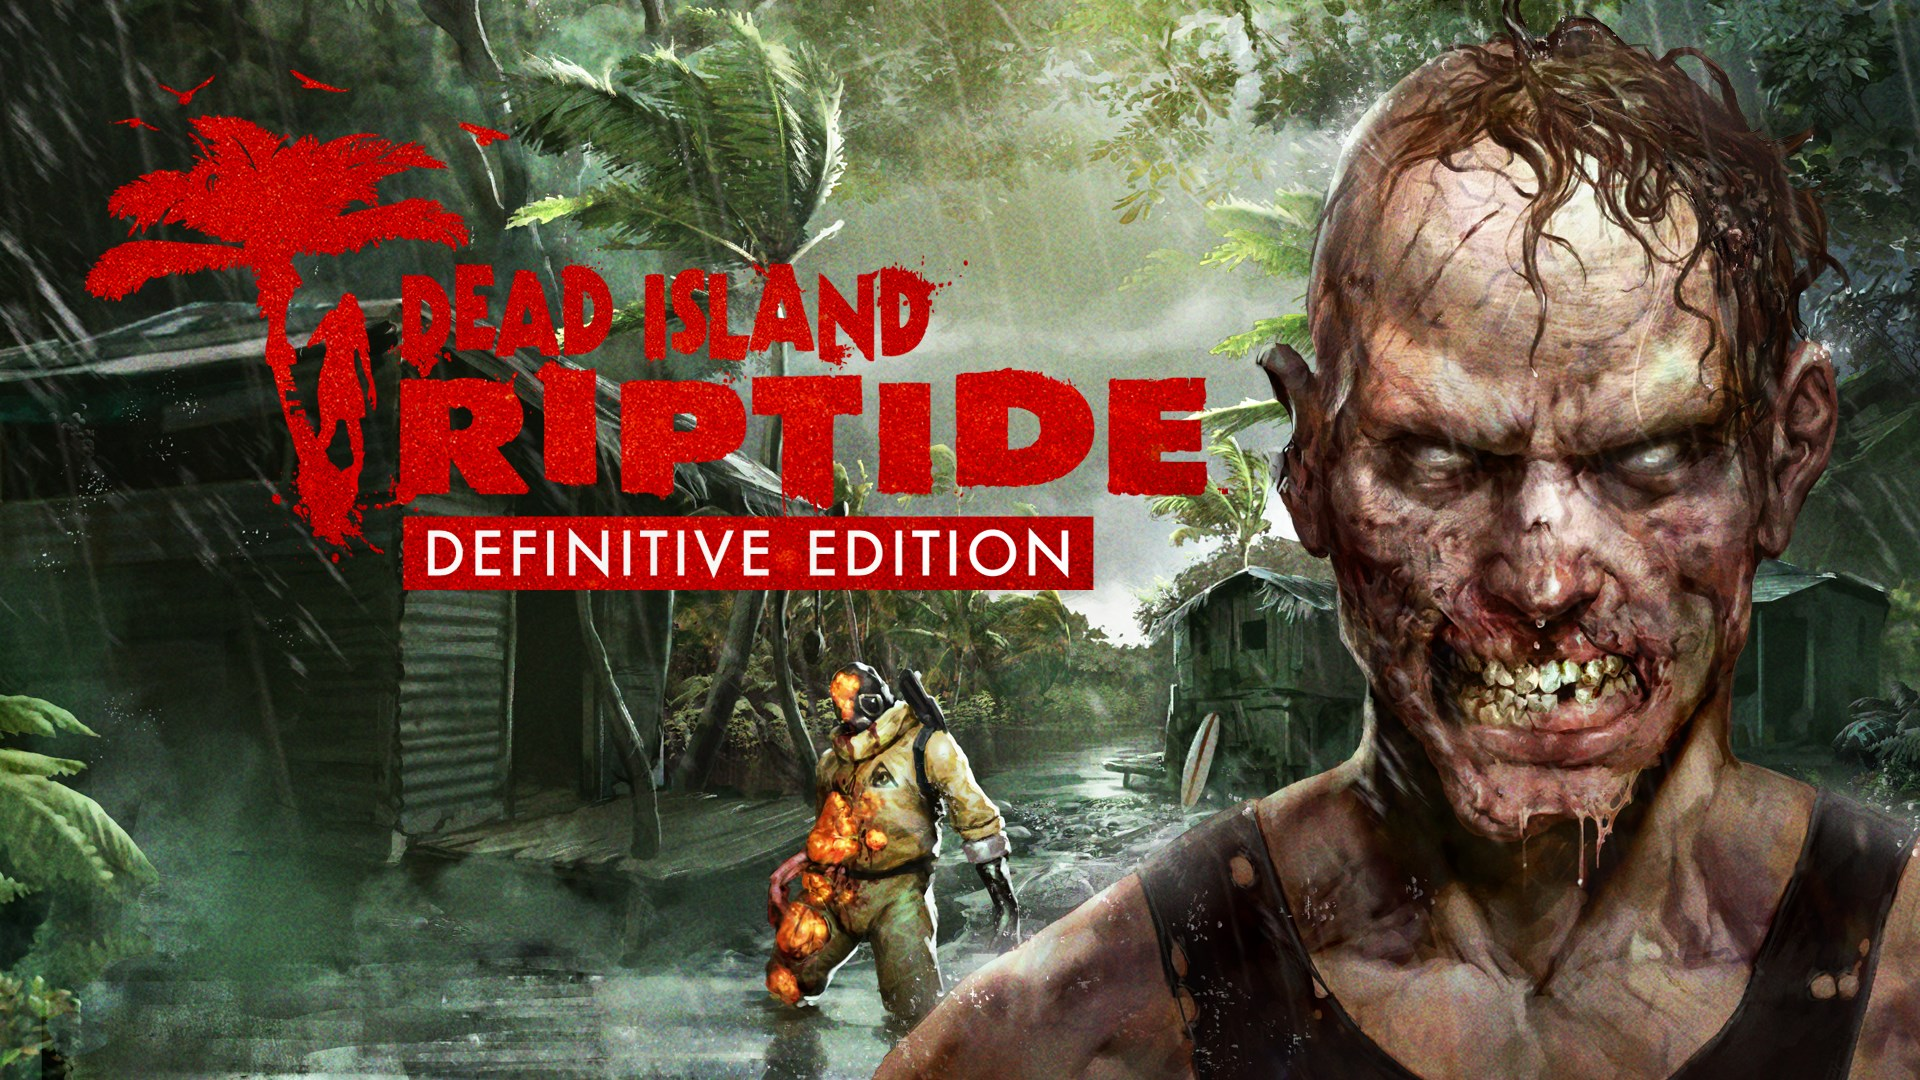 Dead Island: Riptide Definitive Edition